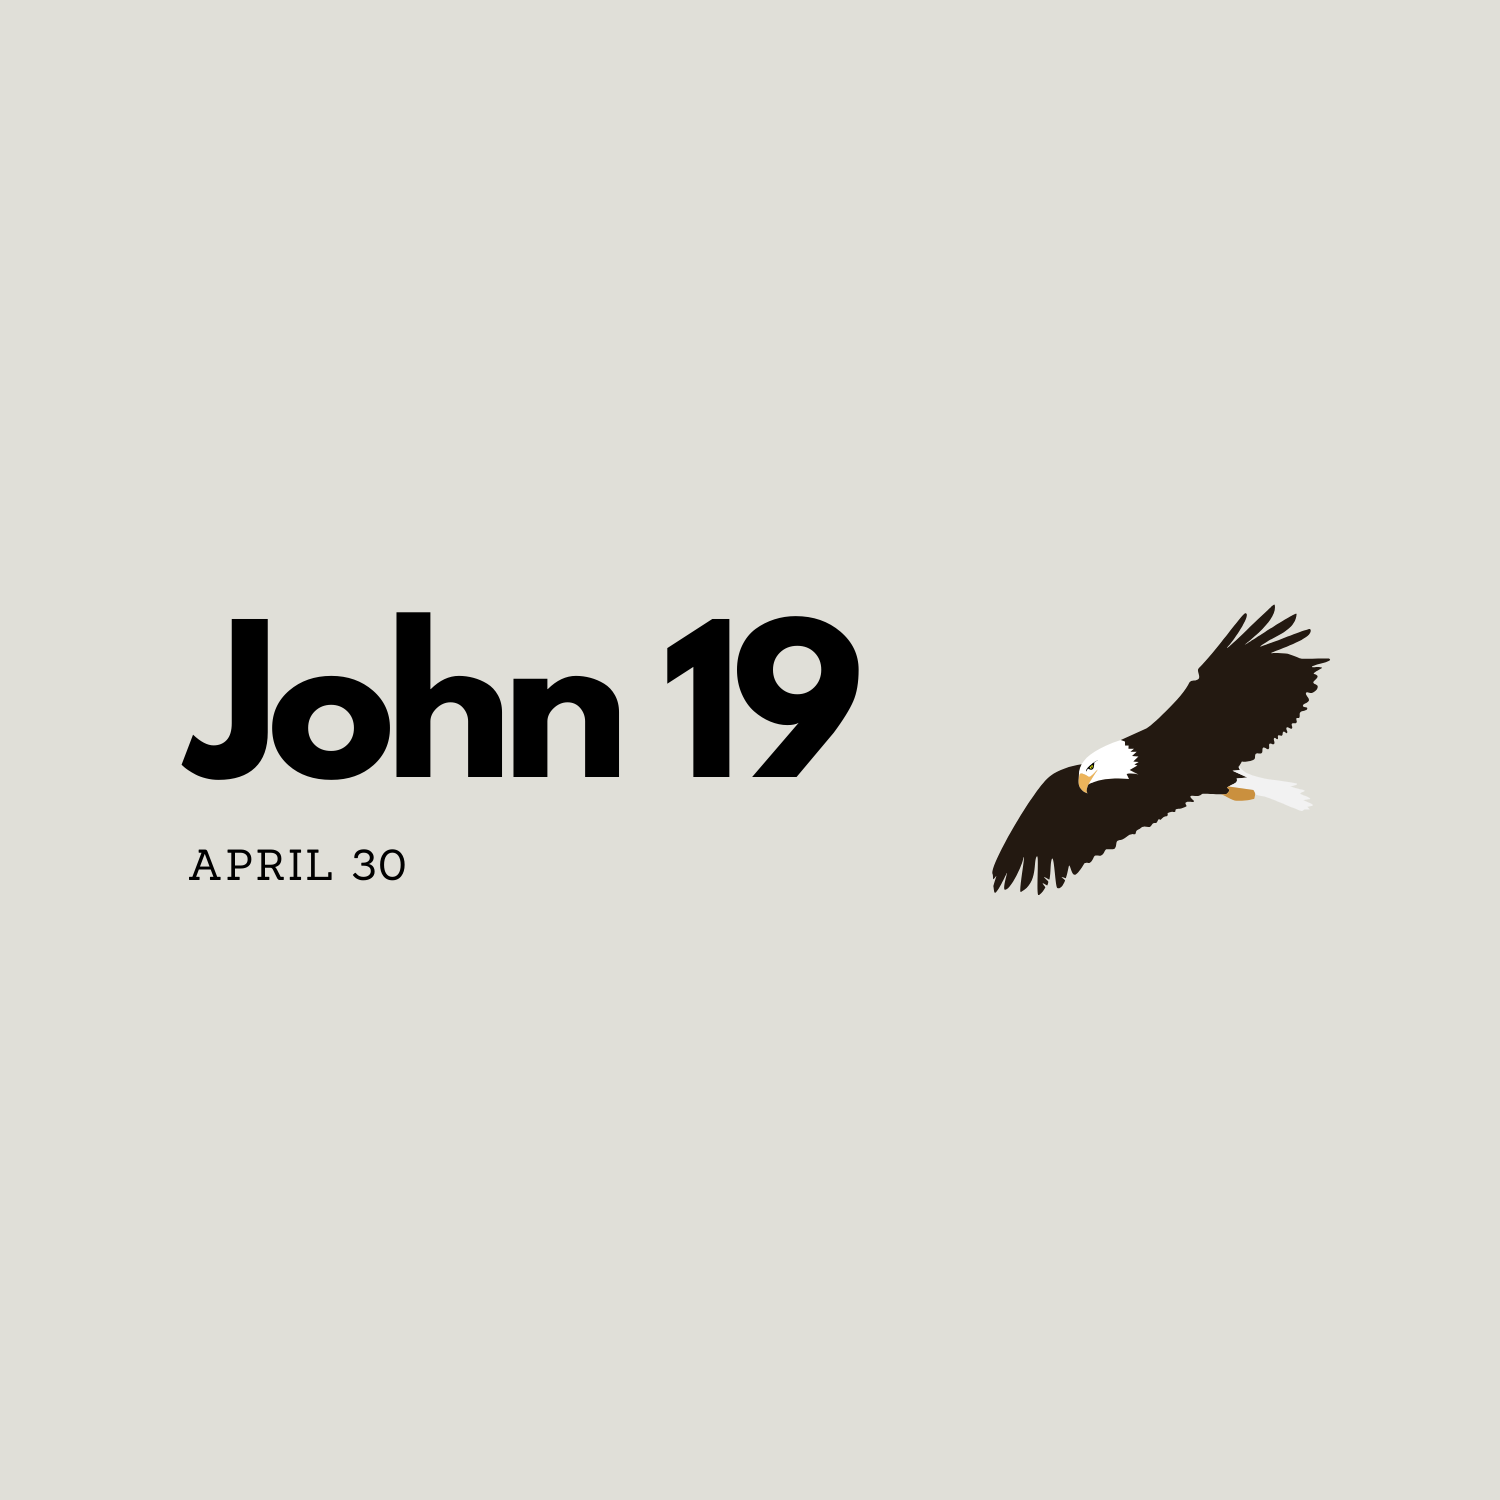 April 30: John 19